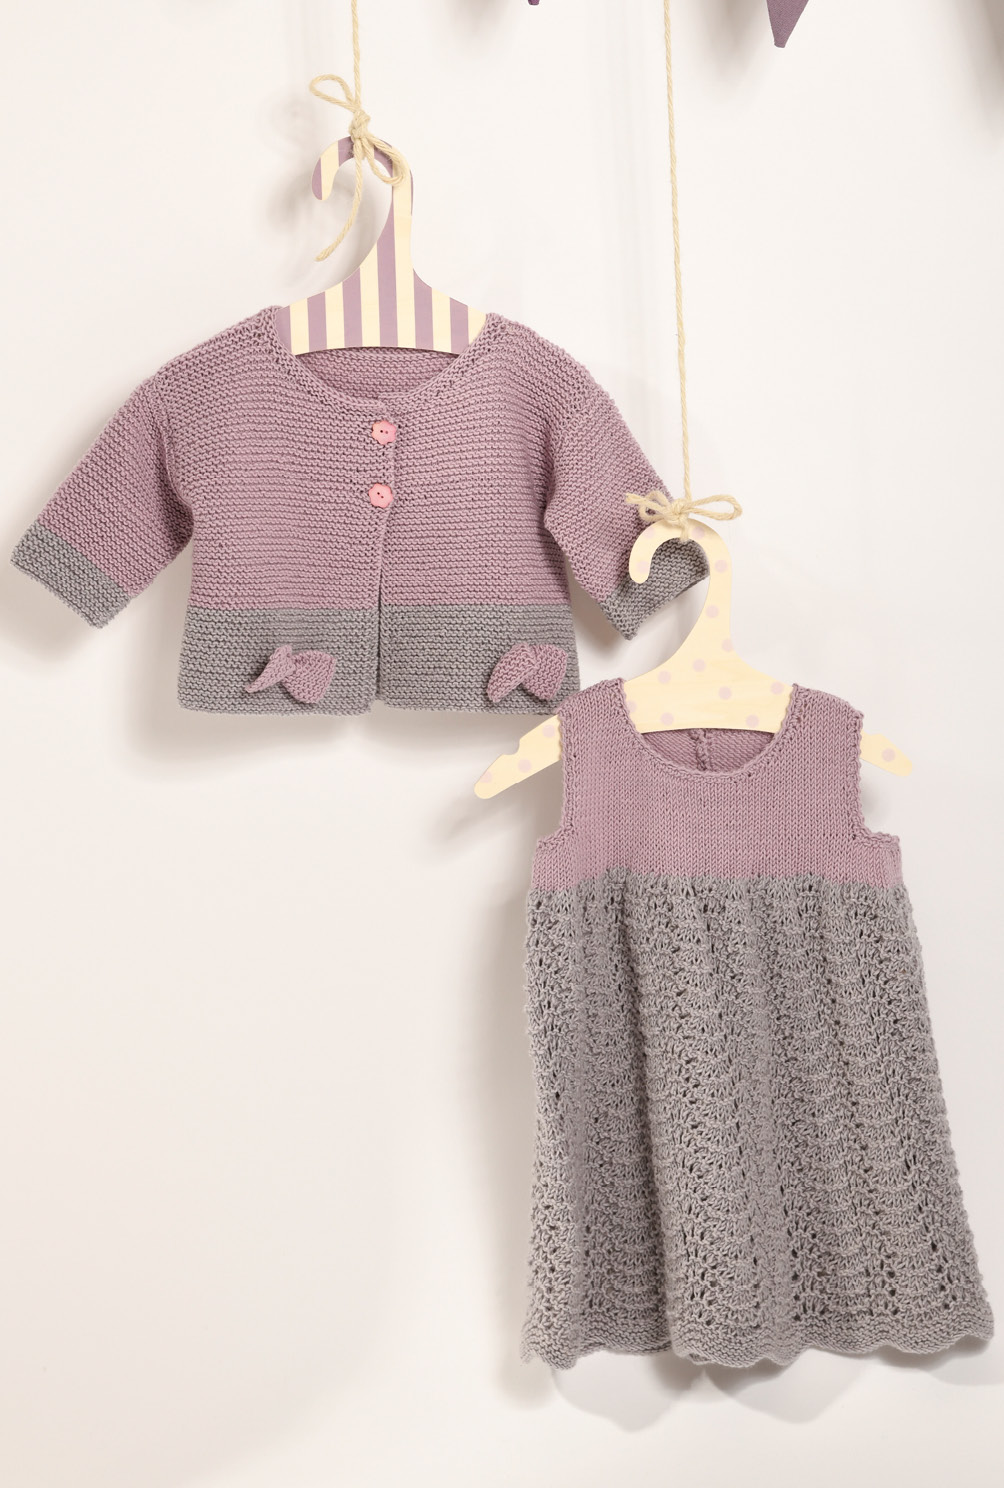 Strick-Set aus Kinderjäckchen und -kleid in Grau und Rosa